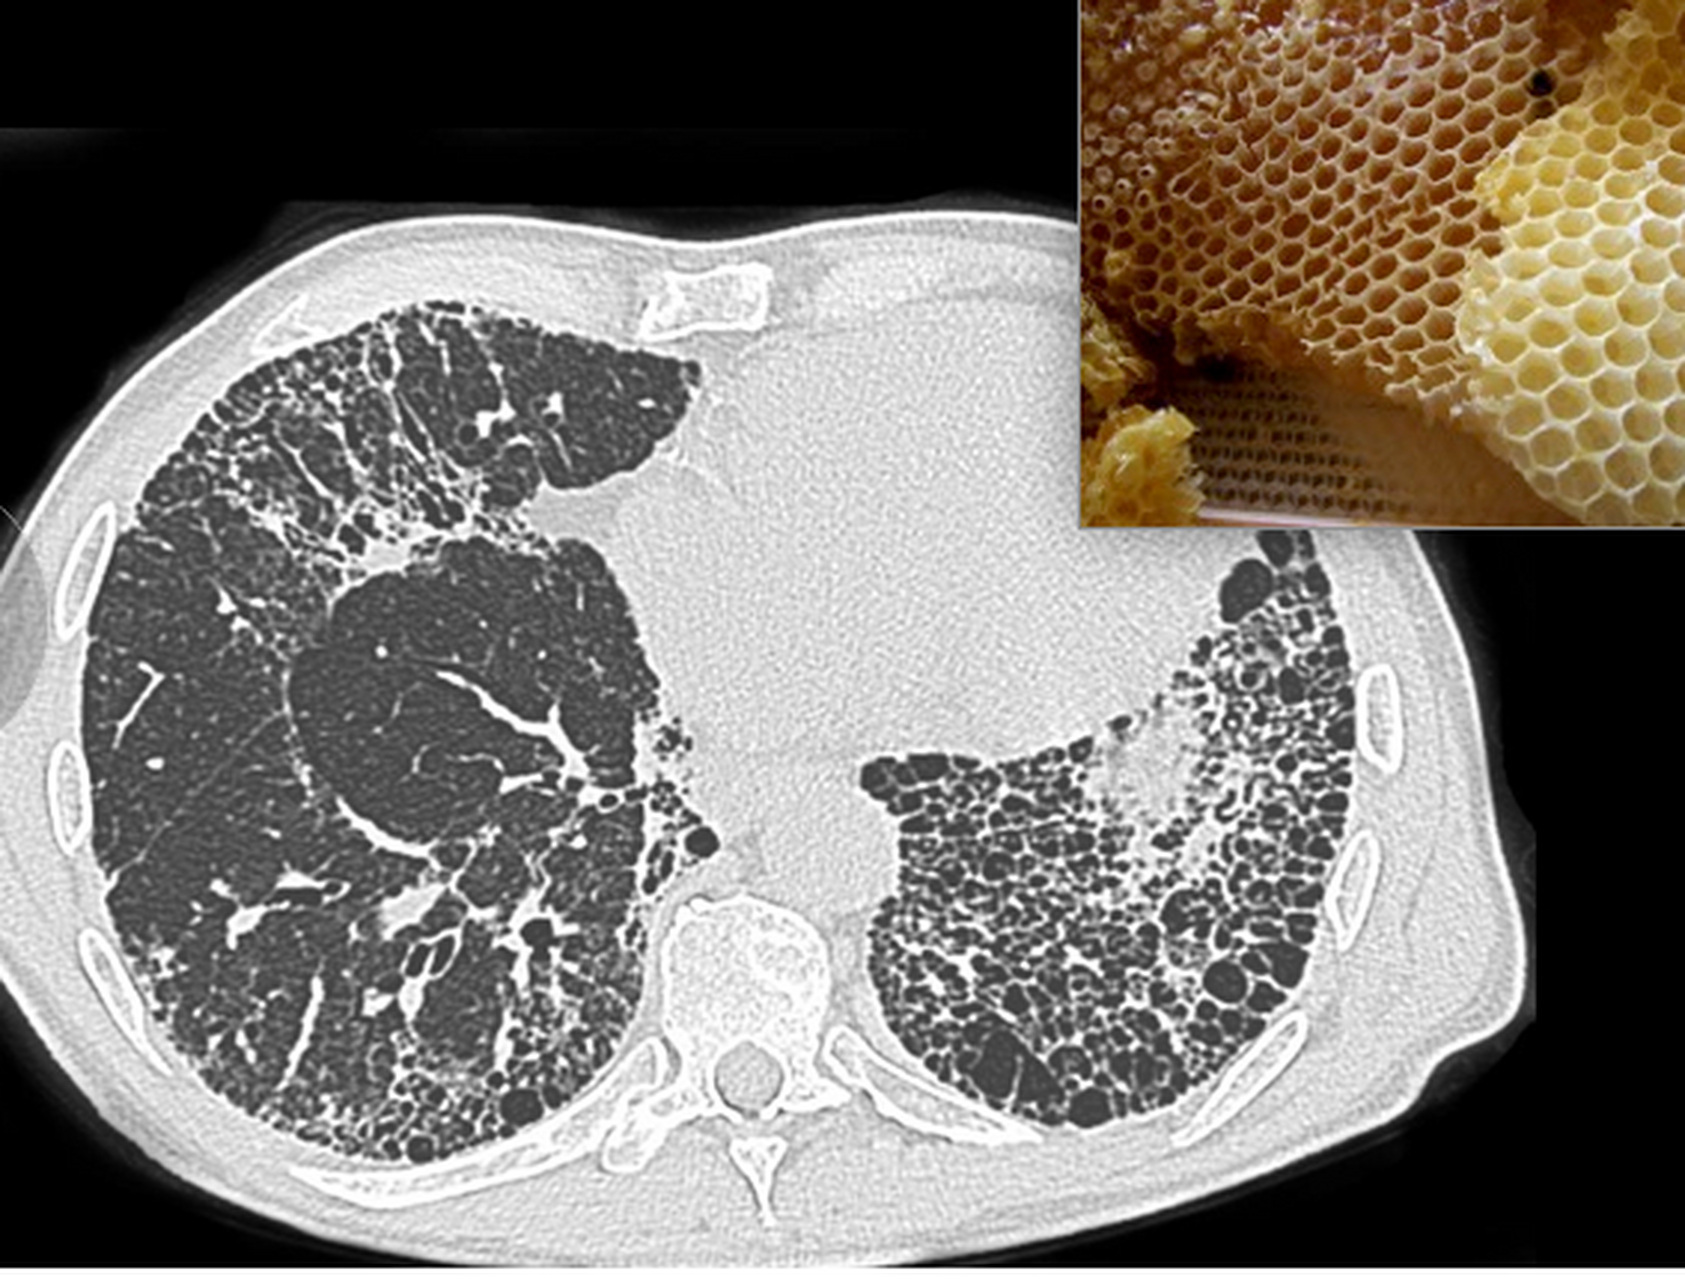 肺纤维化和正常肺图片图片